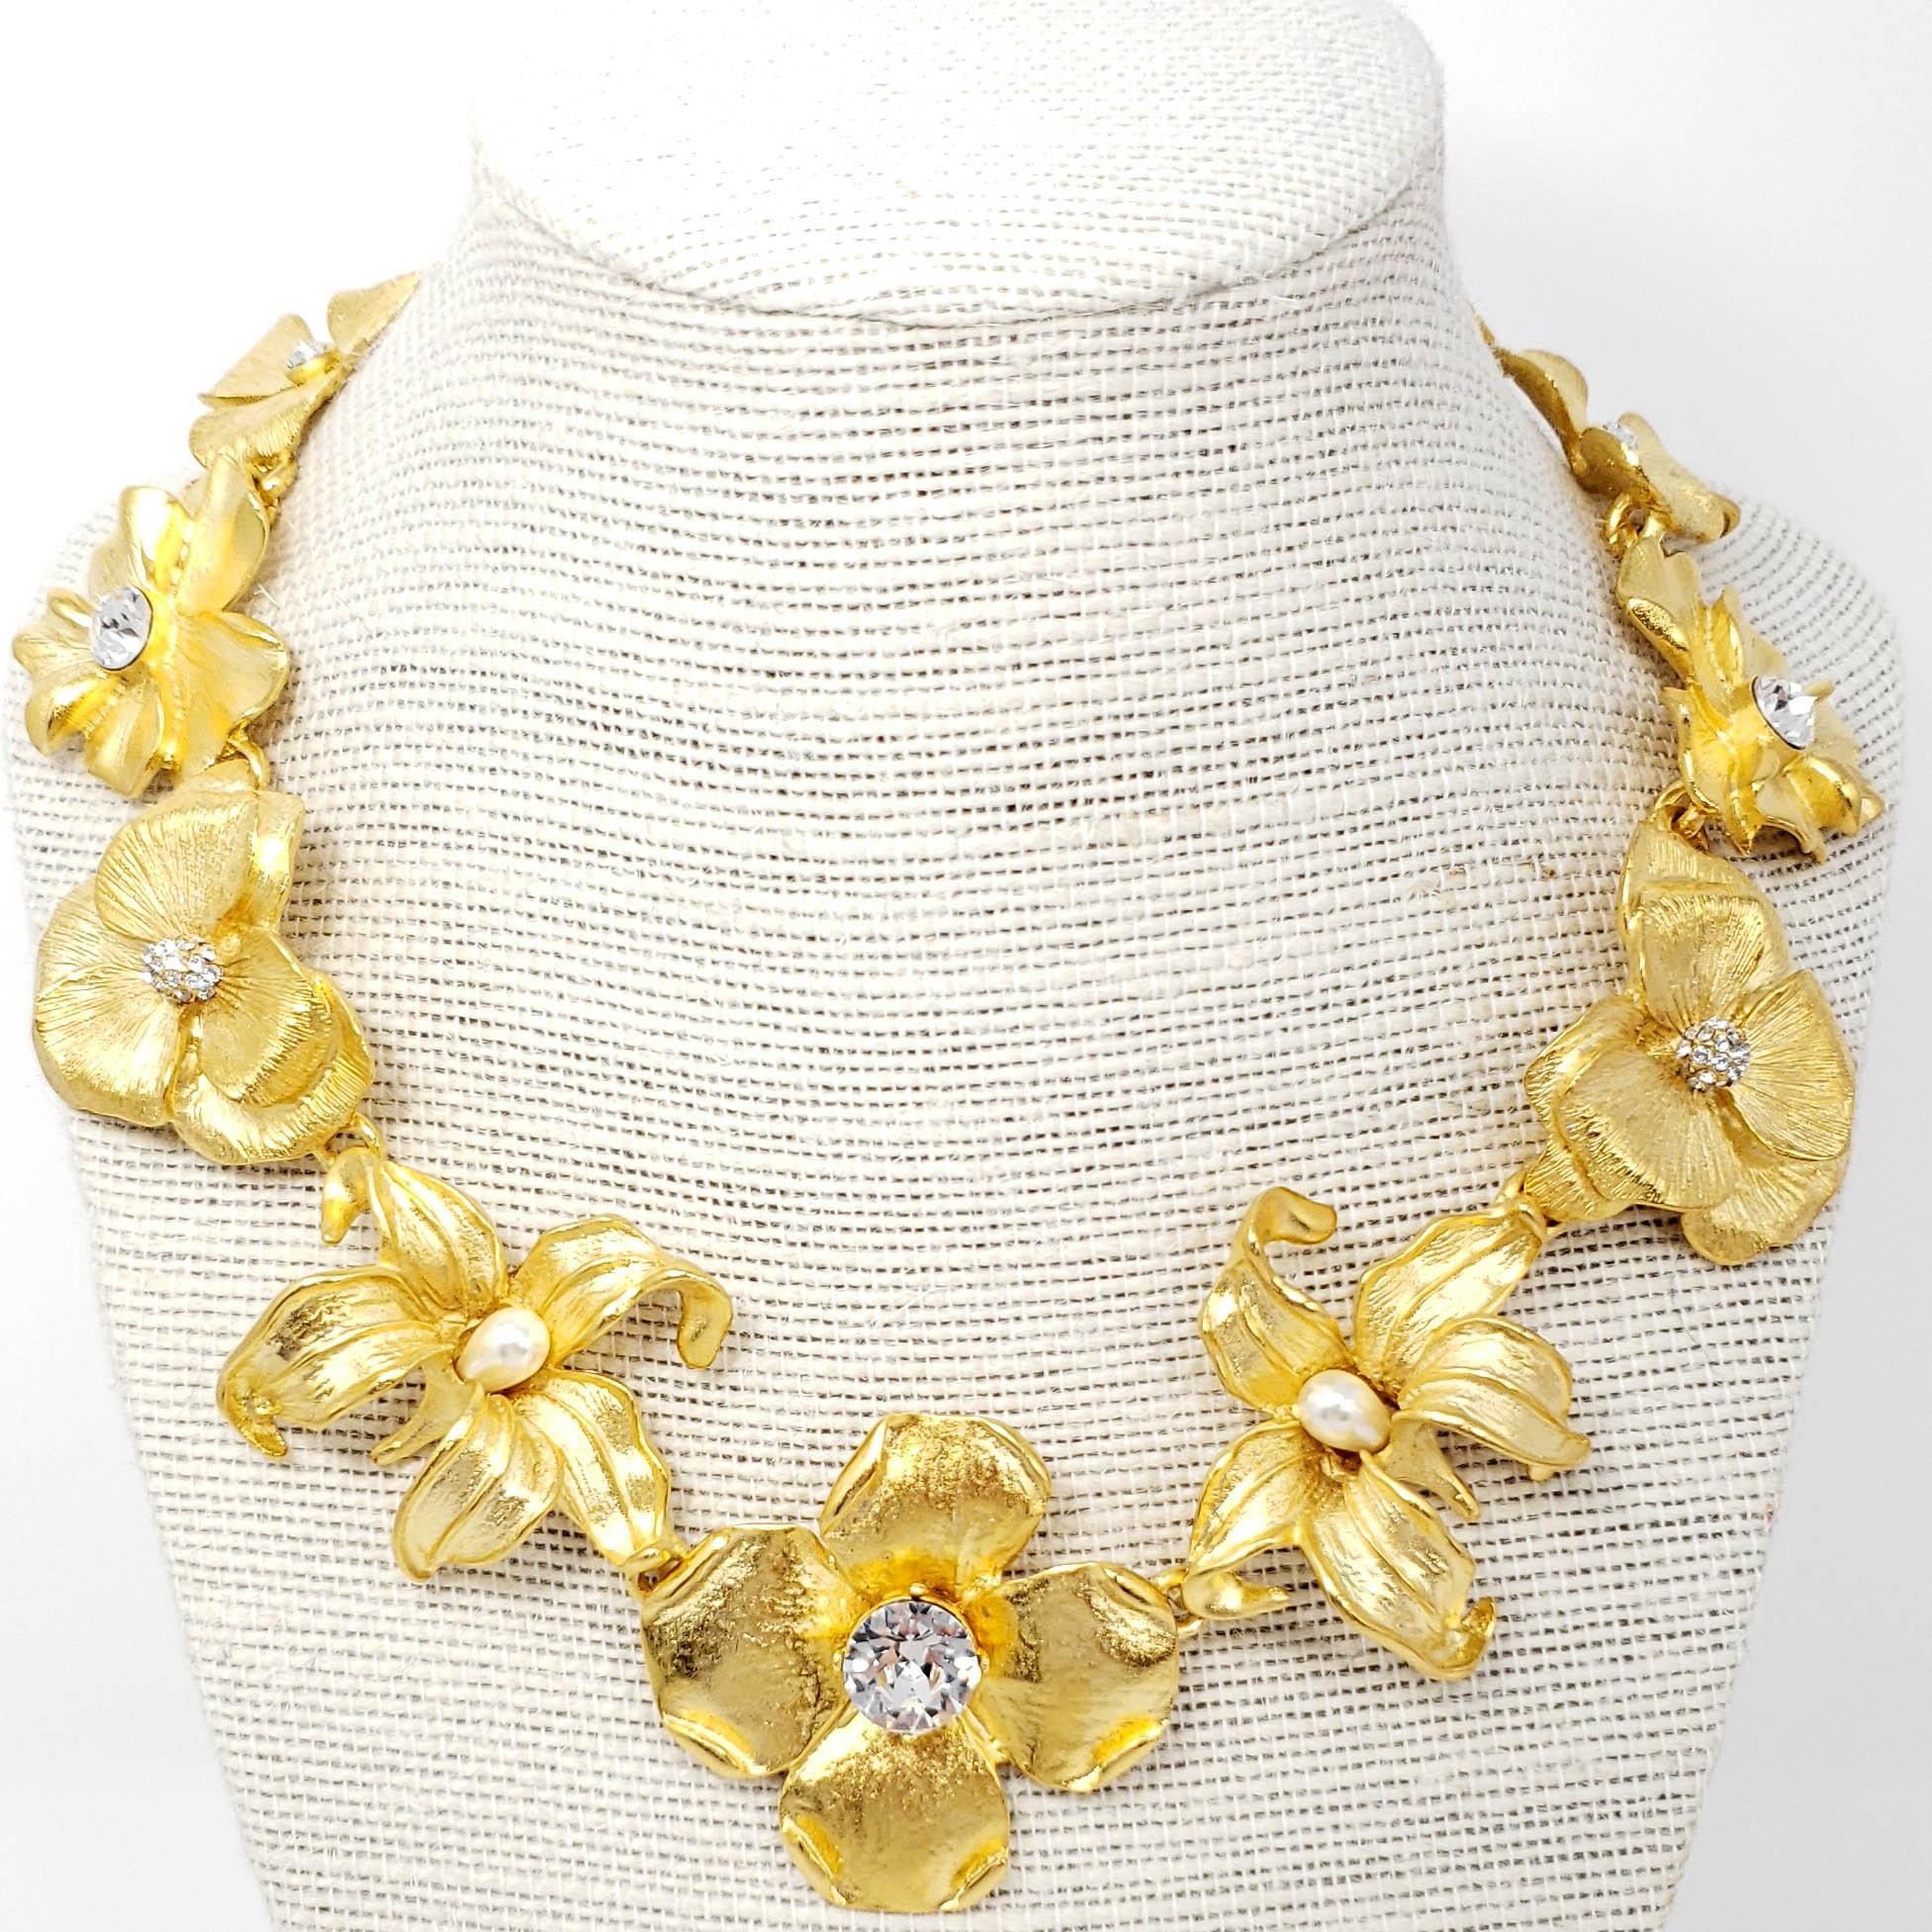 Une beauté féminine rayonnante ! Ce collier de fleurs en satin doré avec centres en cristal et fausses perles blanches rehausse tous les looks avec des fleurs étincelantes et épanouies à l'éclat doré.

Longueur 14.5 in / 37 cm plus 3.25 in / 8.5 cm